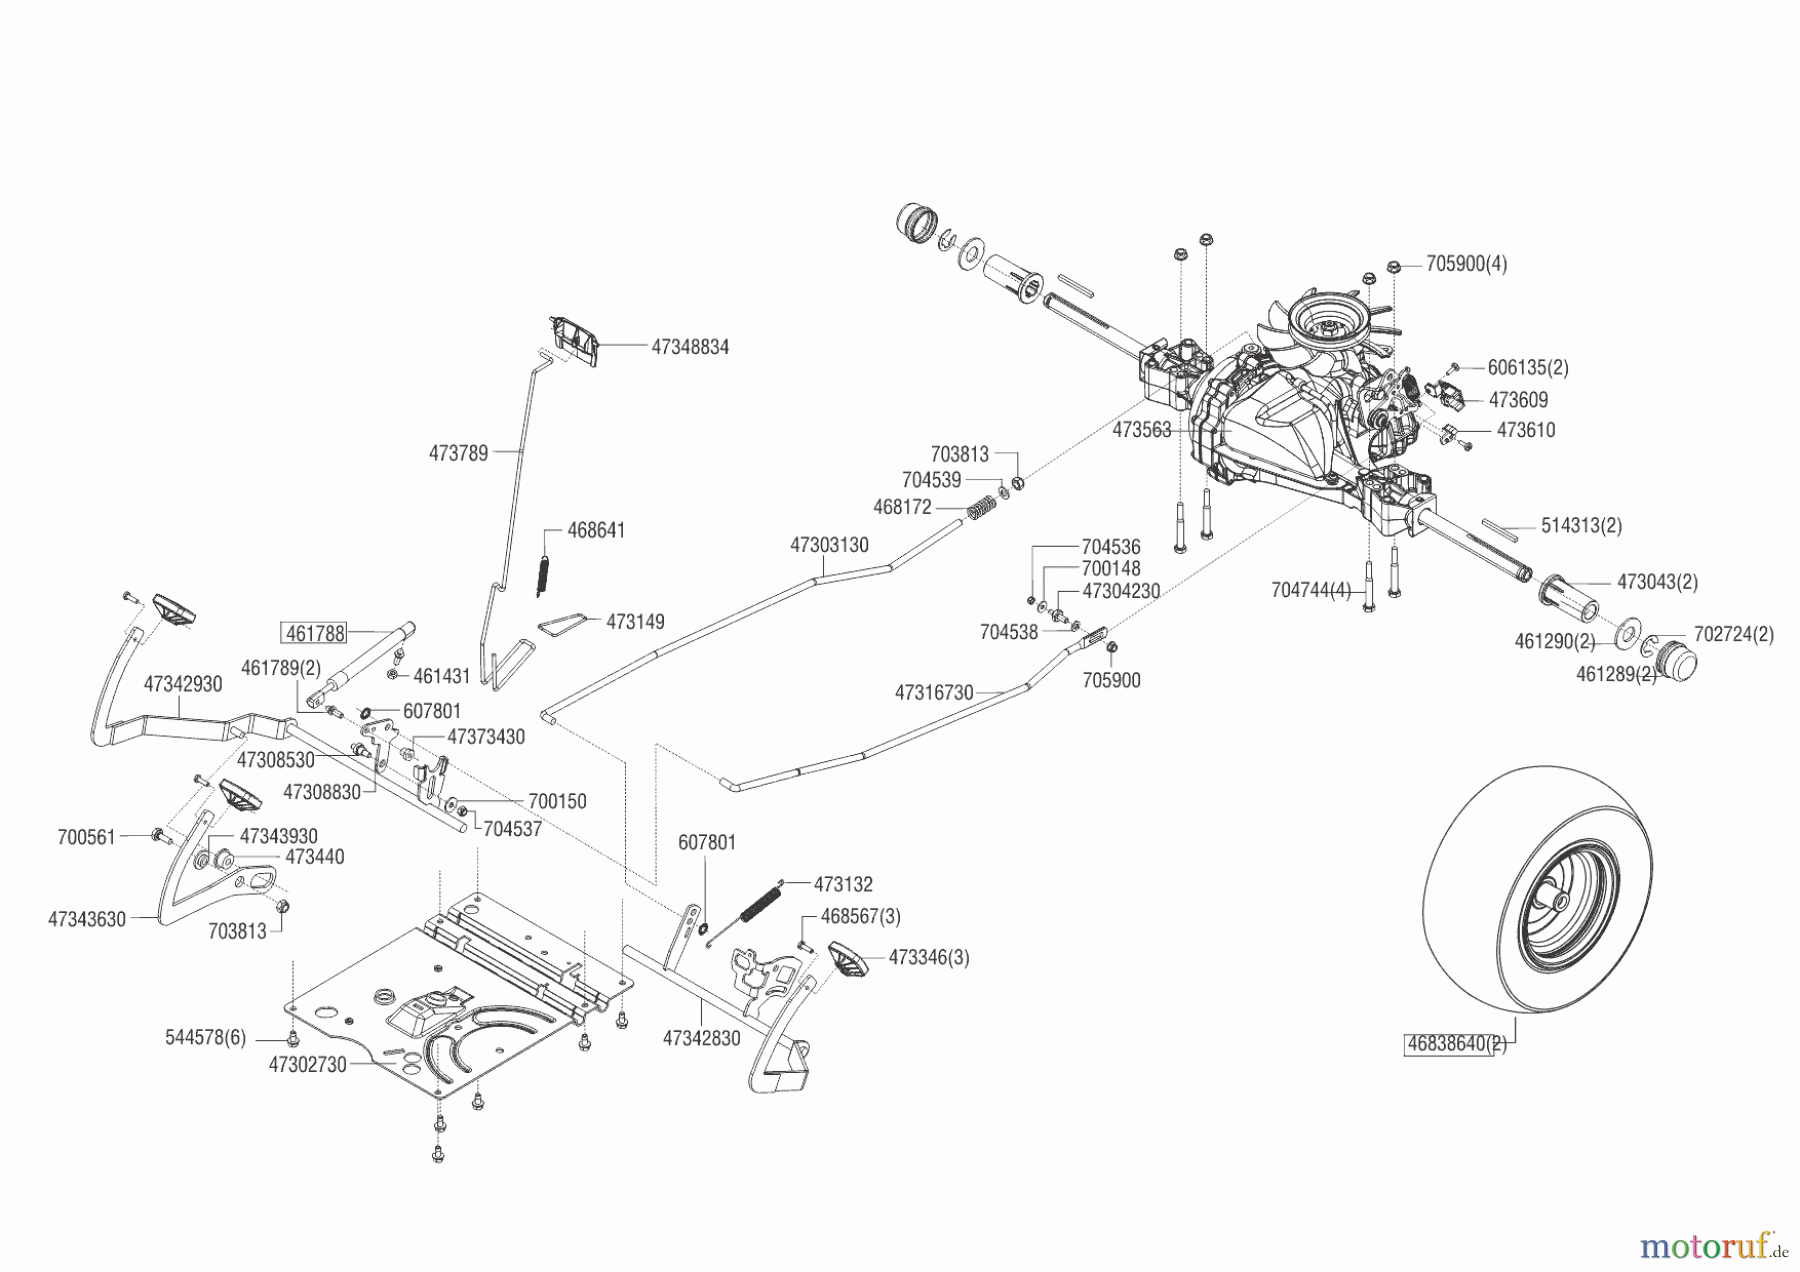  Powerline Gartentechnik Rasentraktor T 16-105.4 HD V2  ab 05/2016 Seite 4